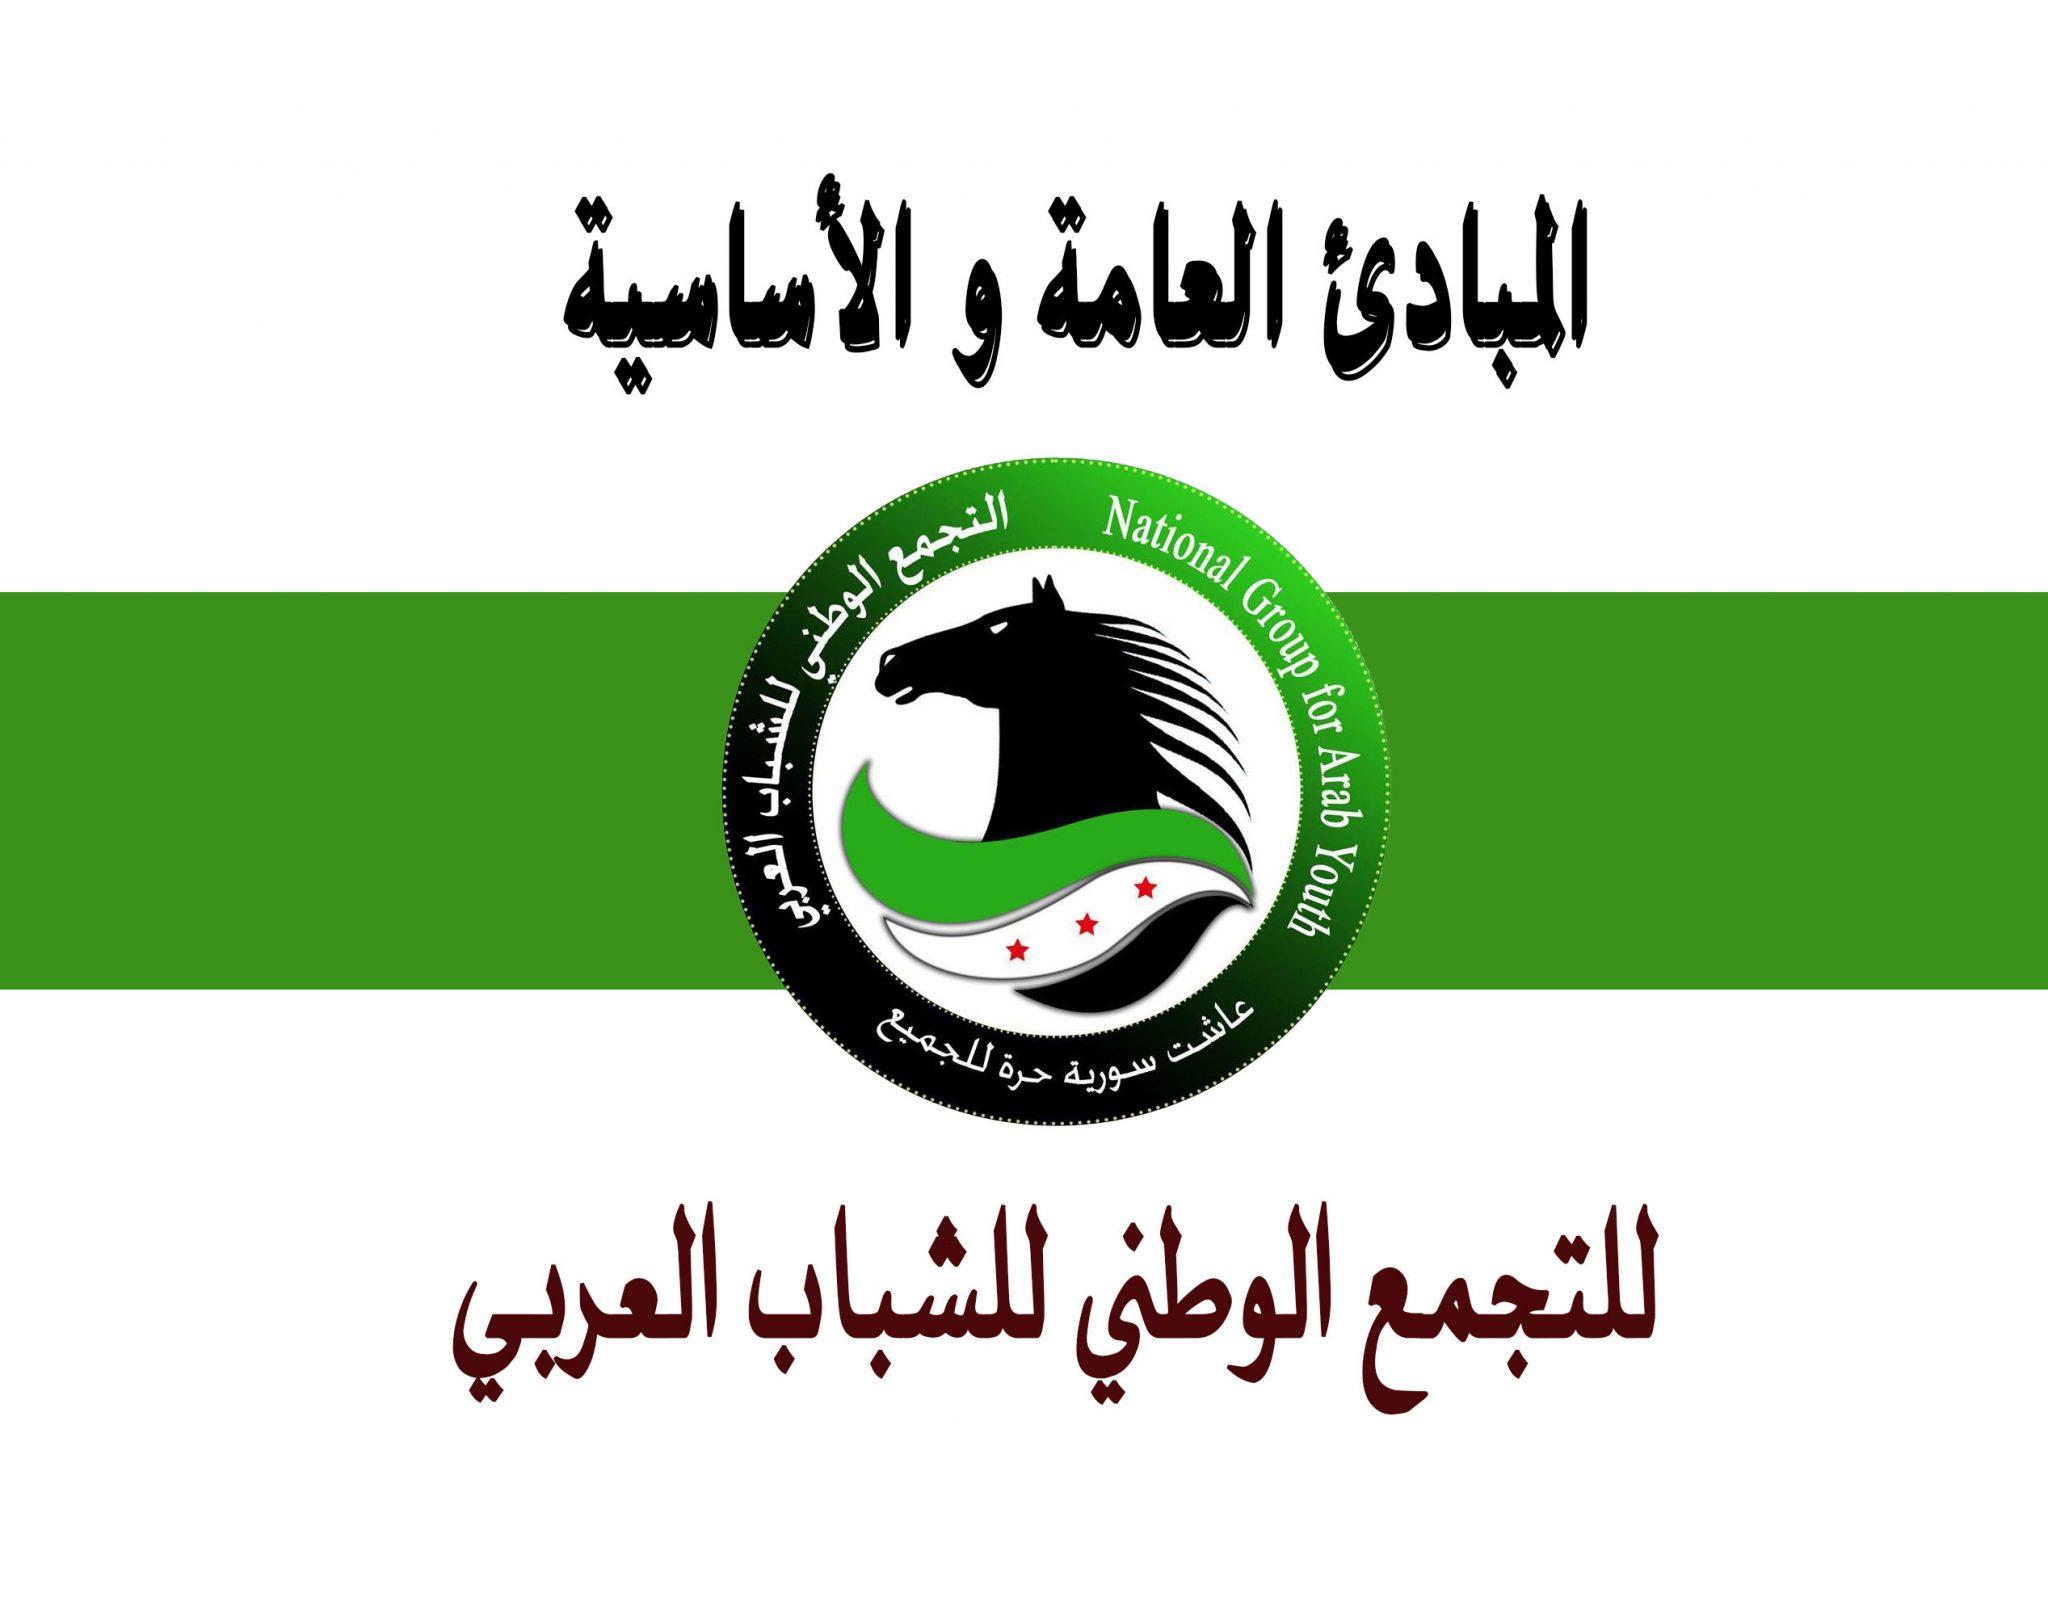 المبادئ العامة ة الأساسية للتجمع الوطني للشباب العربي